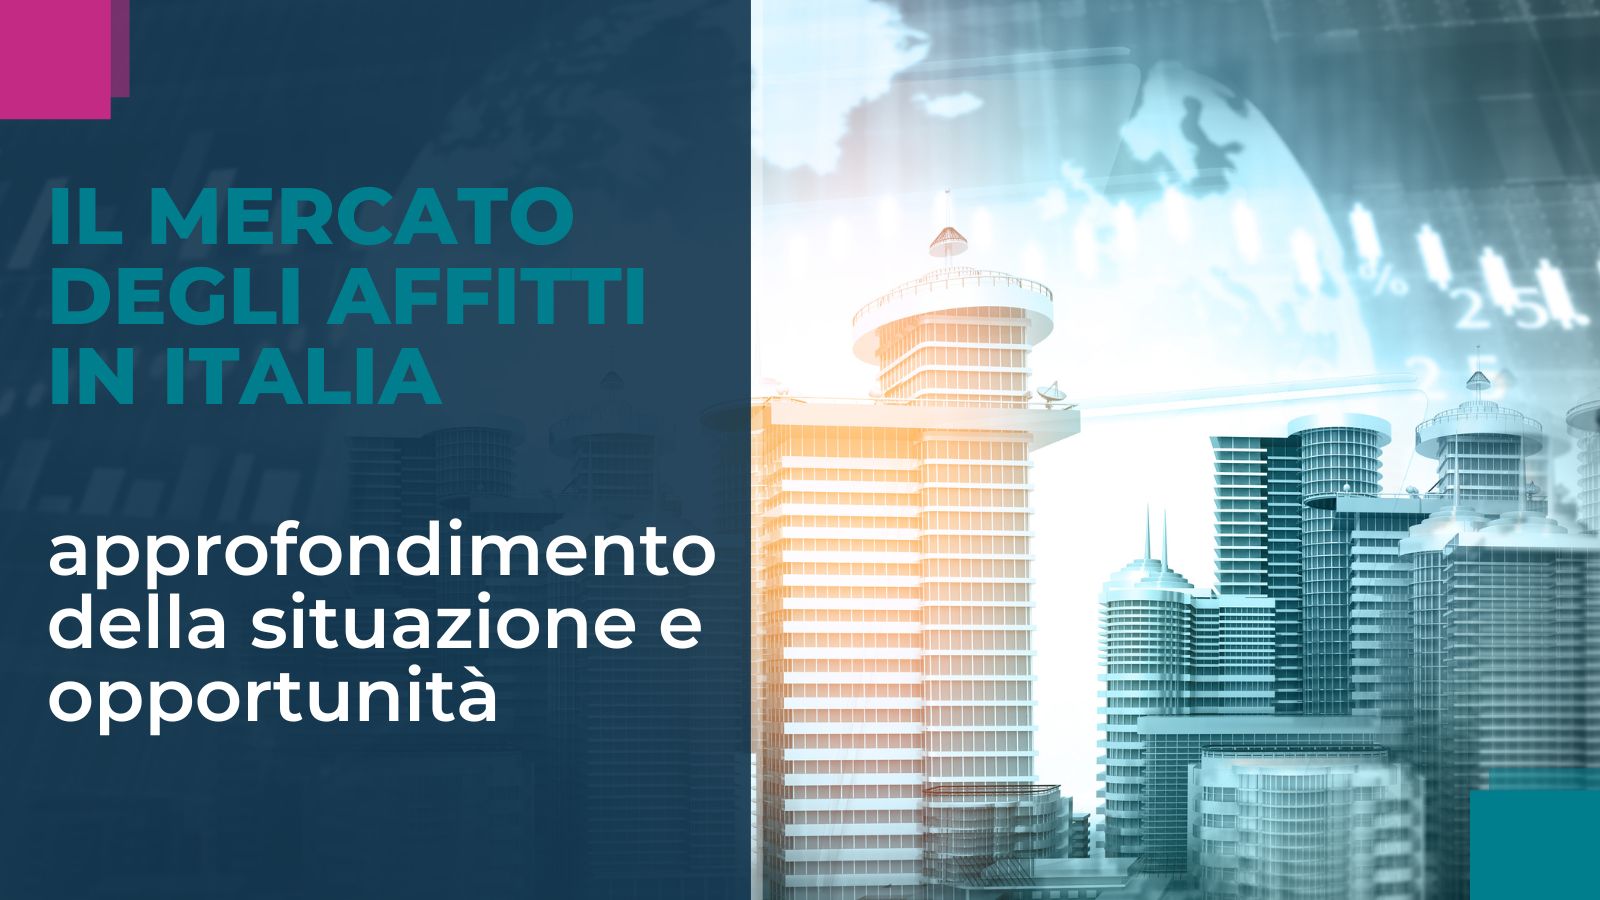 Il Mercato degli affitti in Italia: uno sguardo approfondito alla situazione attuale e le opportunità con SoloAffitti